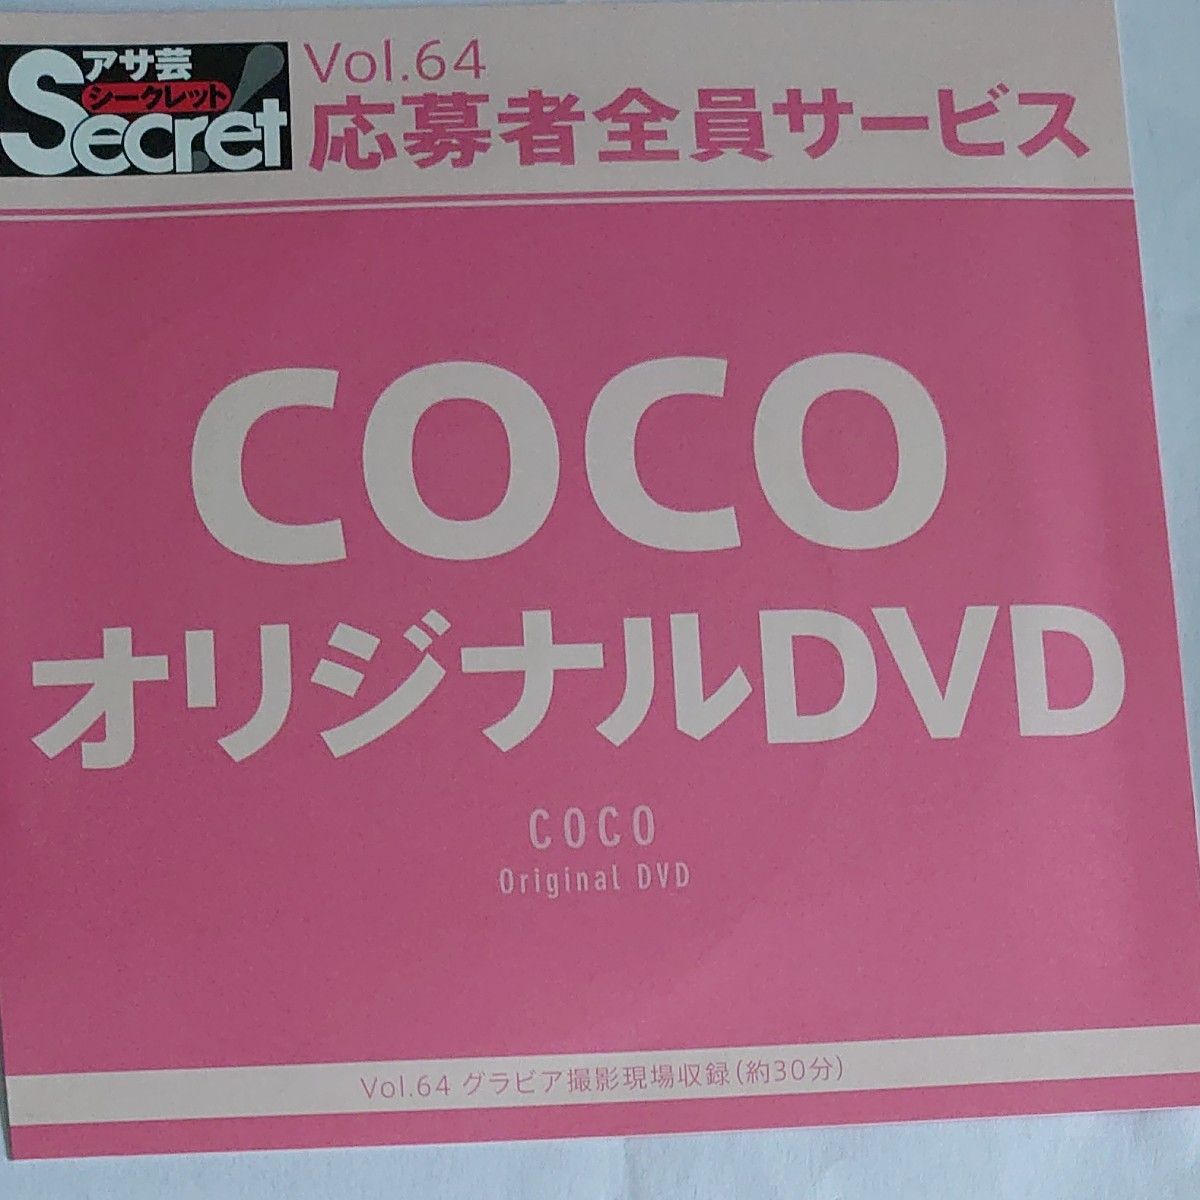 DVD アサ芸シークレット vol.64 COCO 開封済